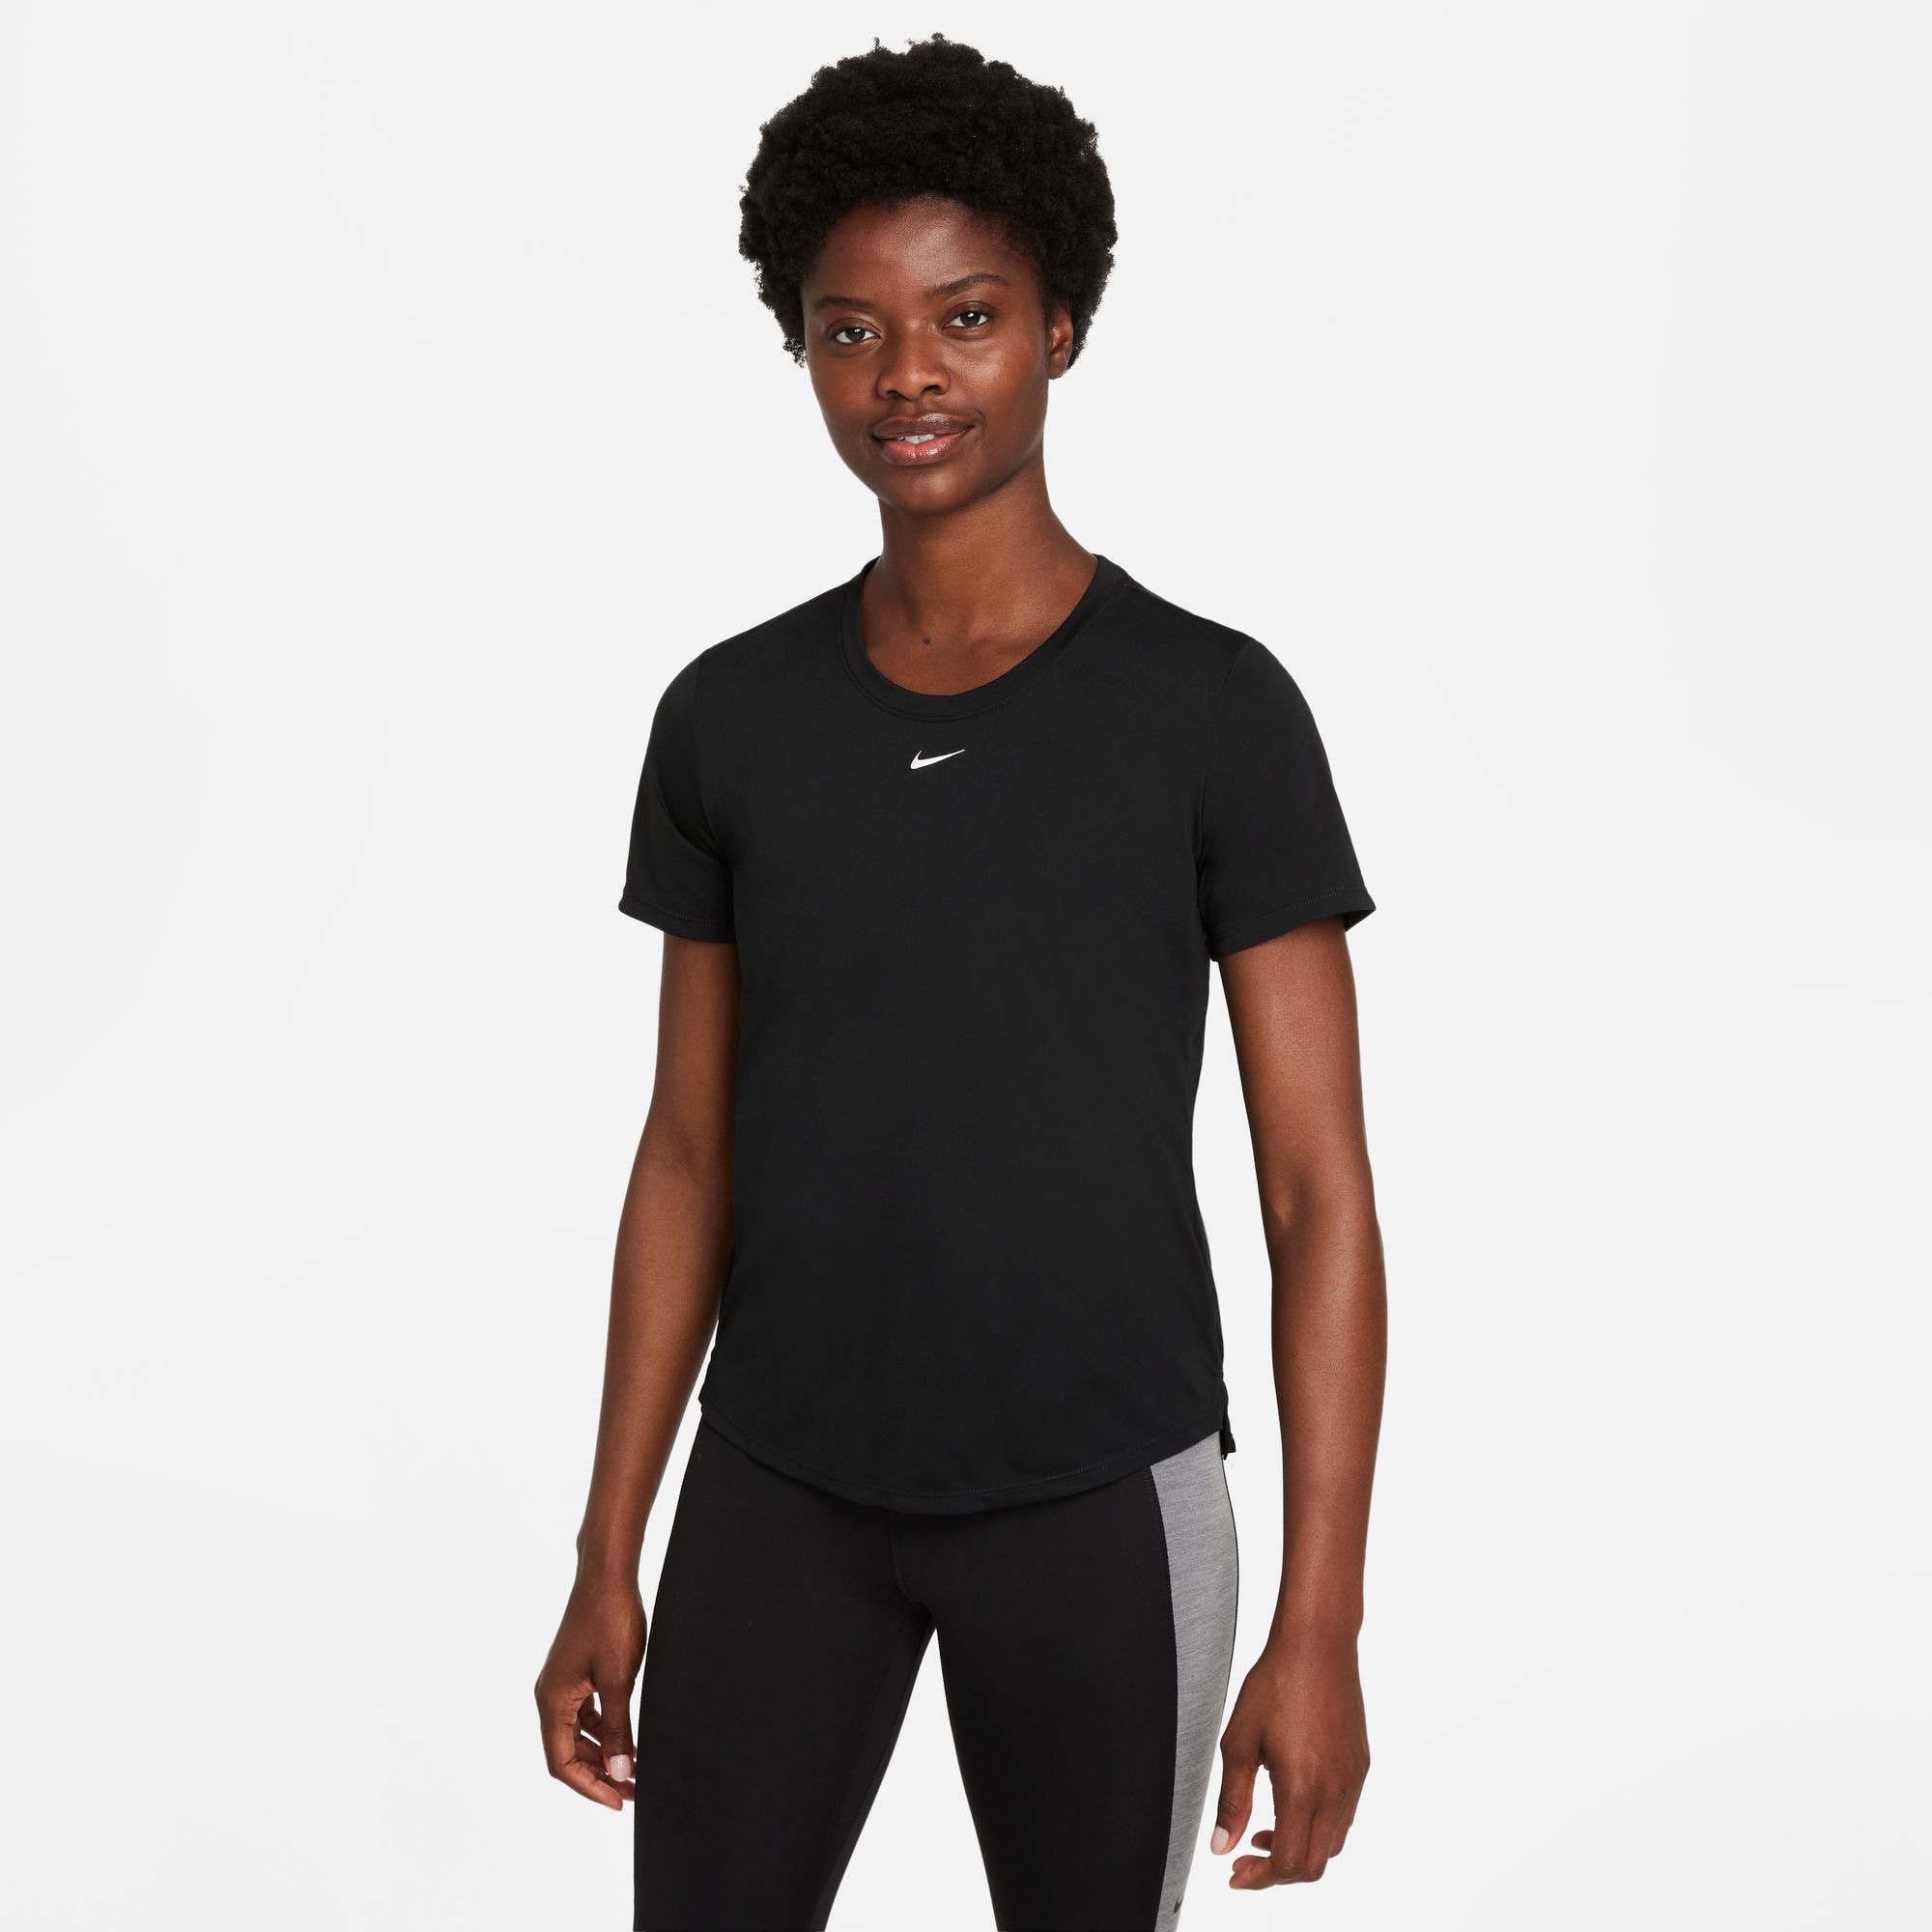 ♕ Nike Ackermann jetzt Schweiz Damenshirts shoppen bei versandkostenfrei